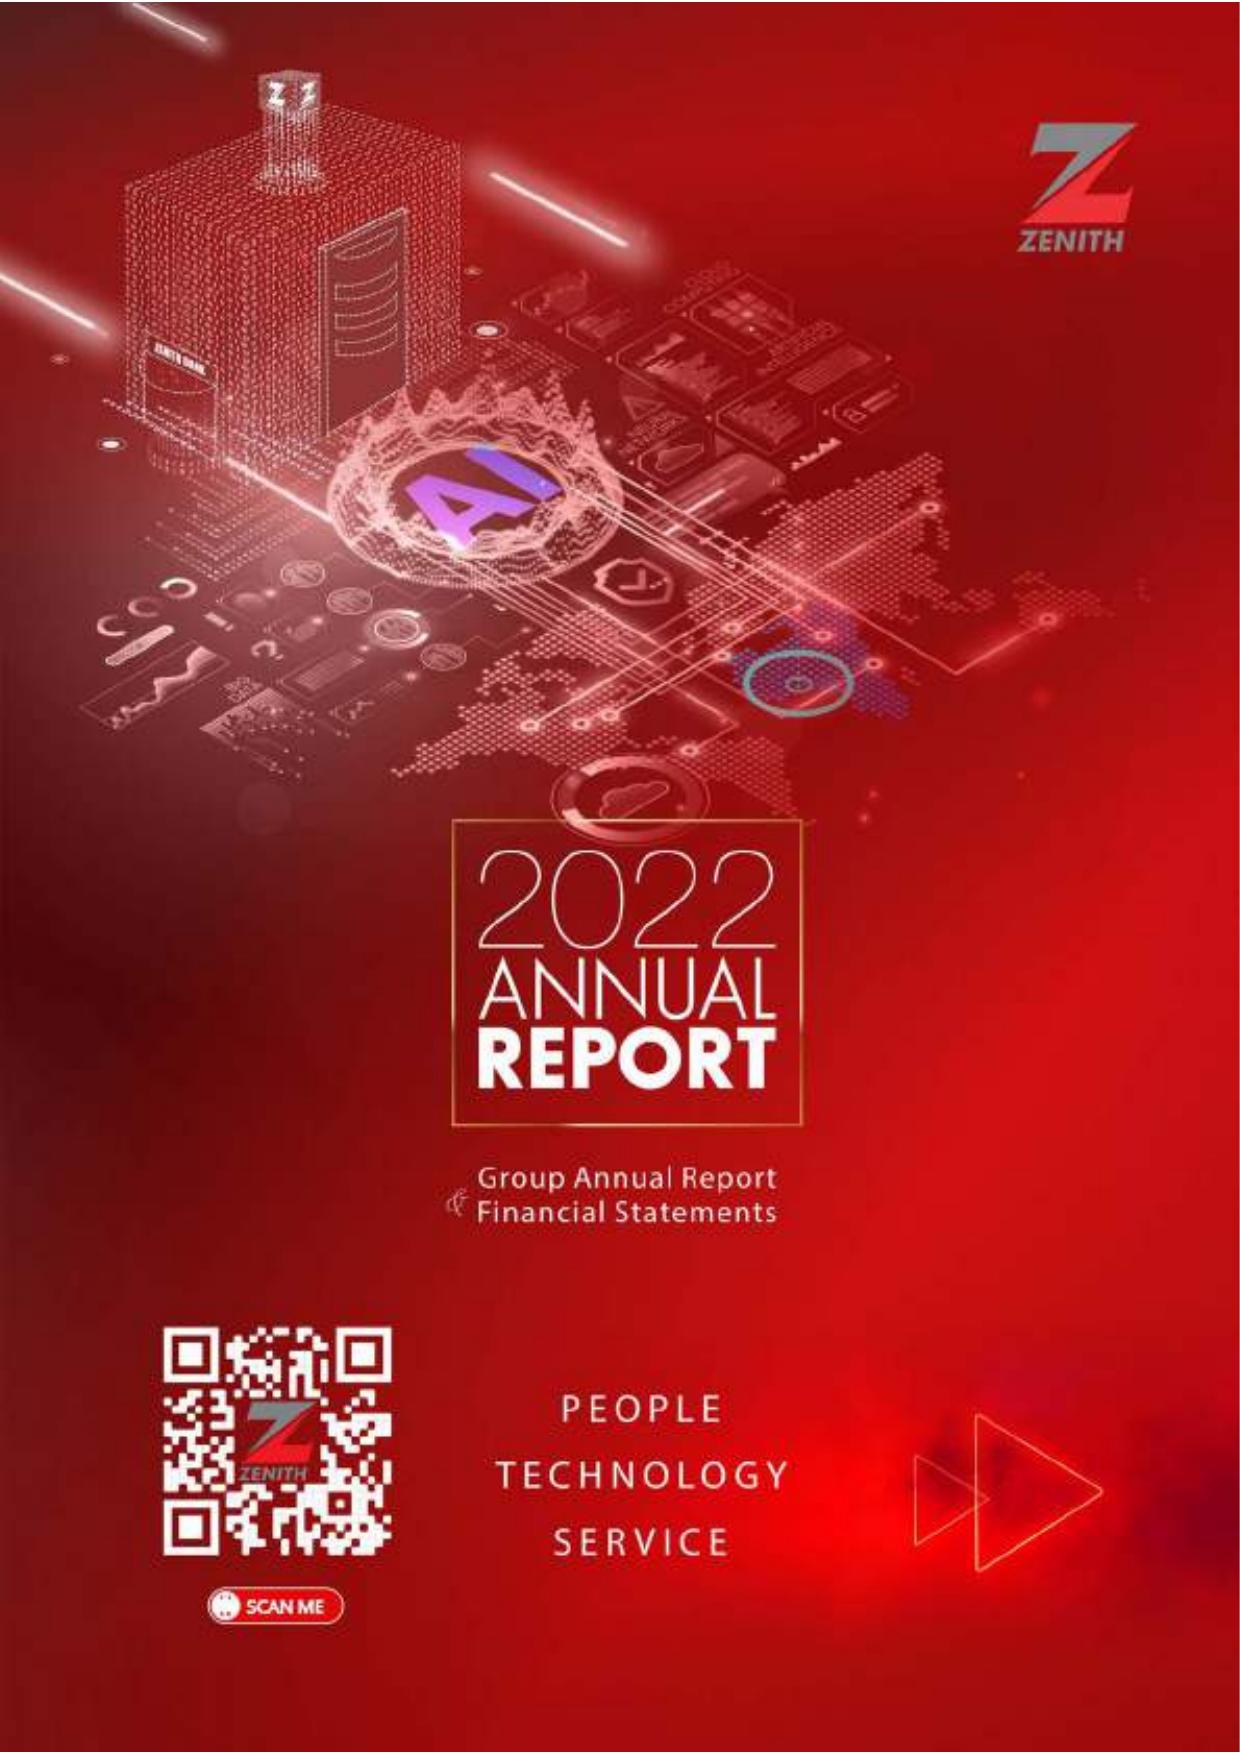 NEWRELIC 2022 Annual Report